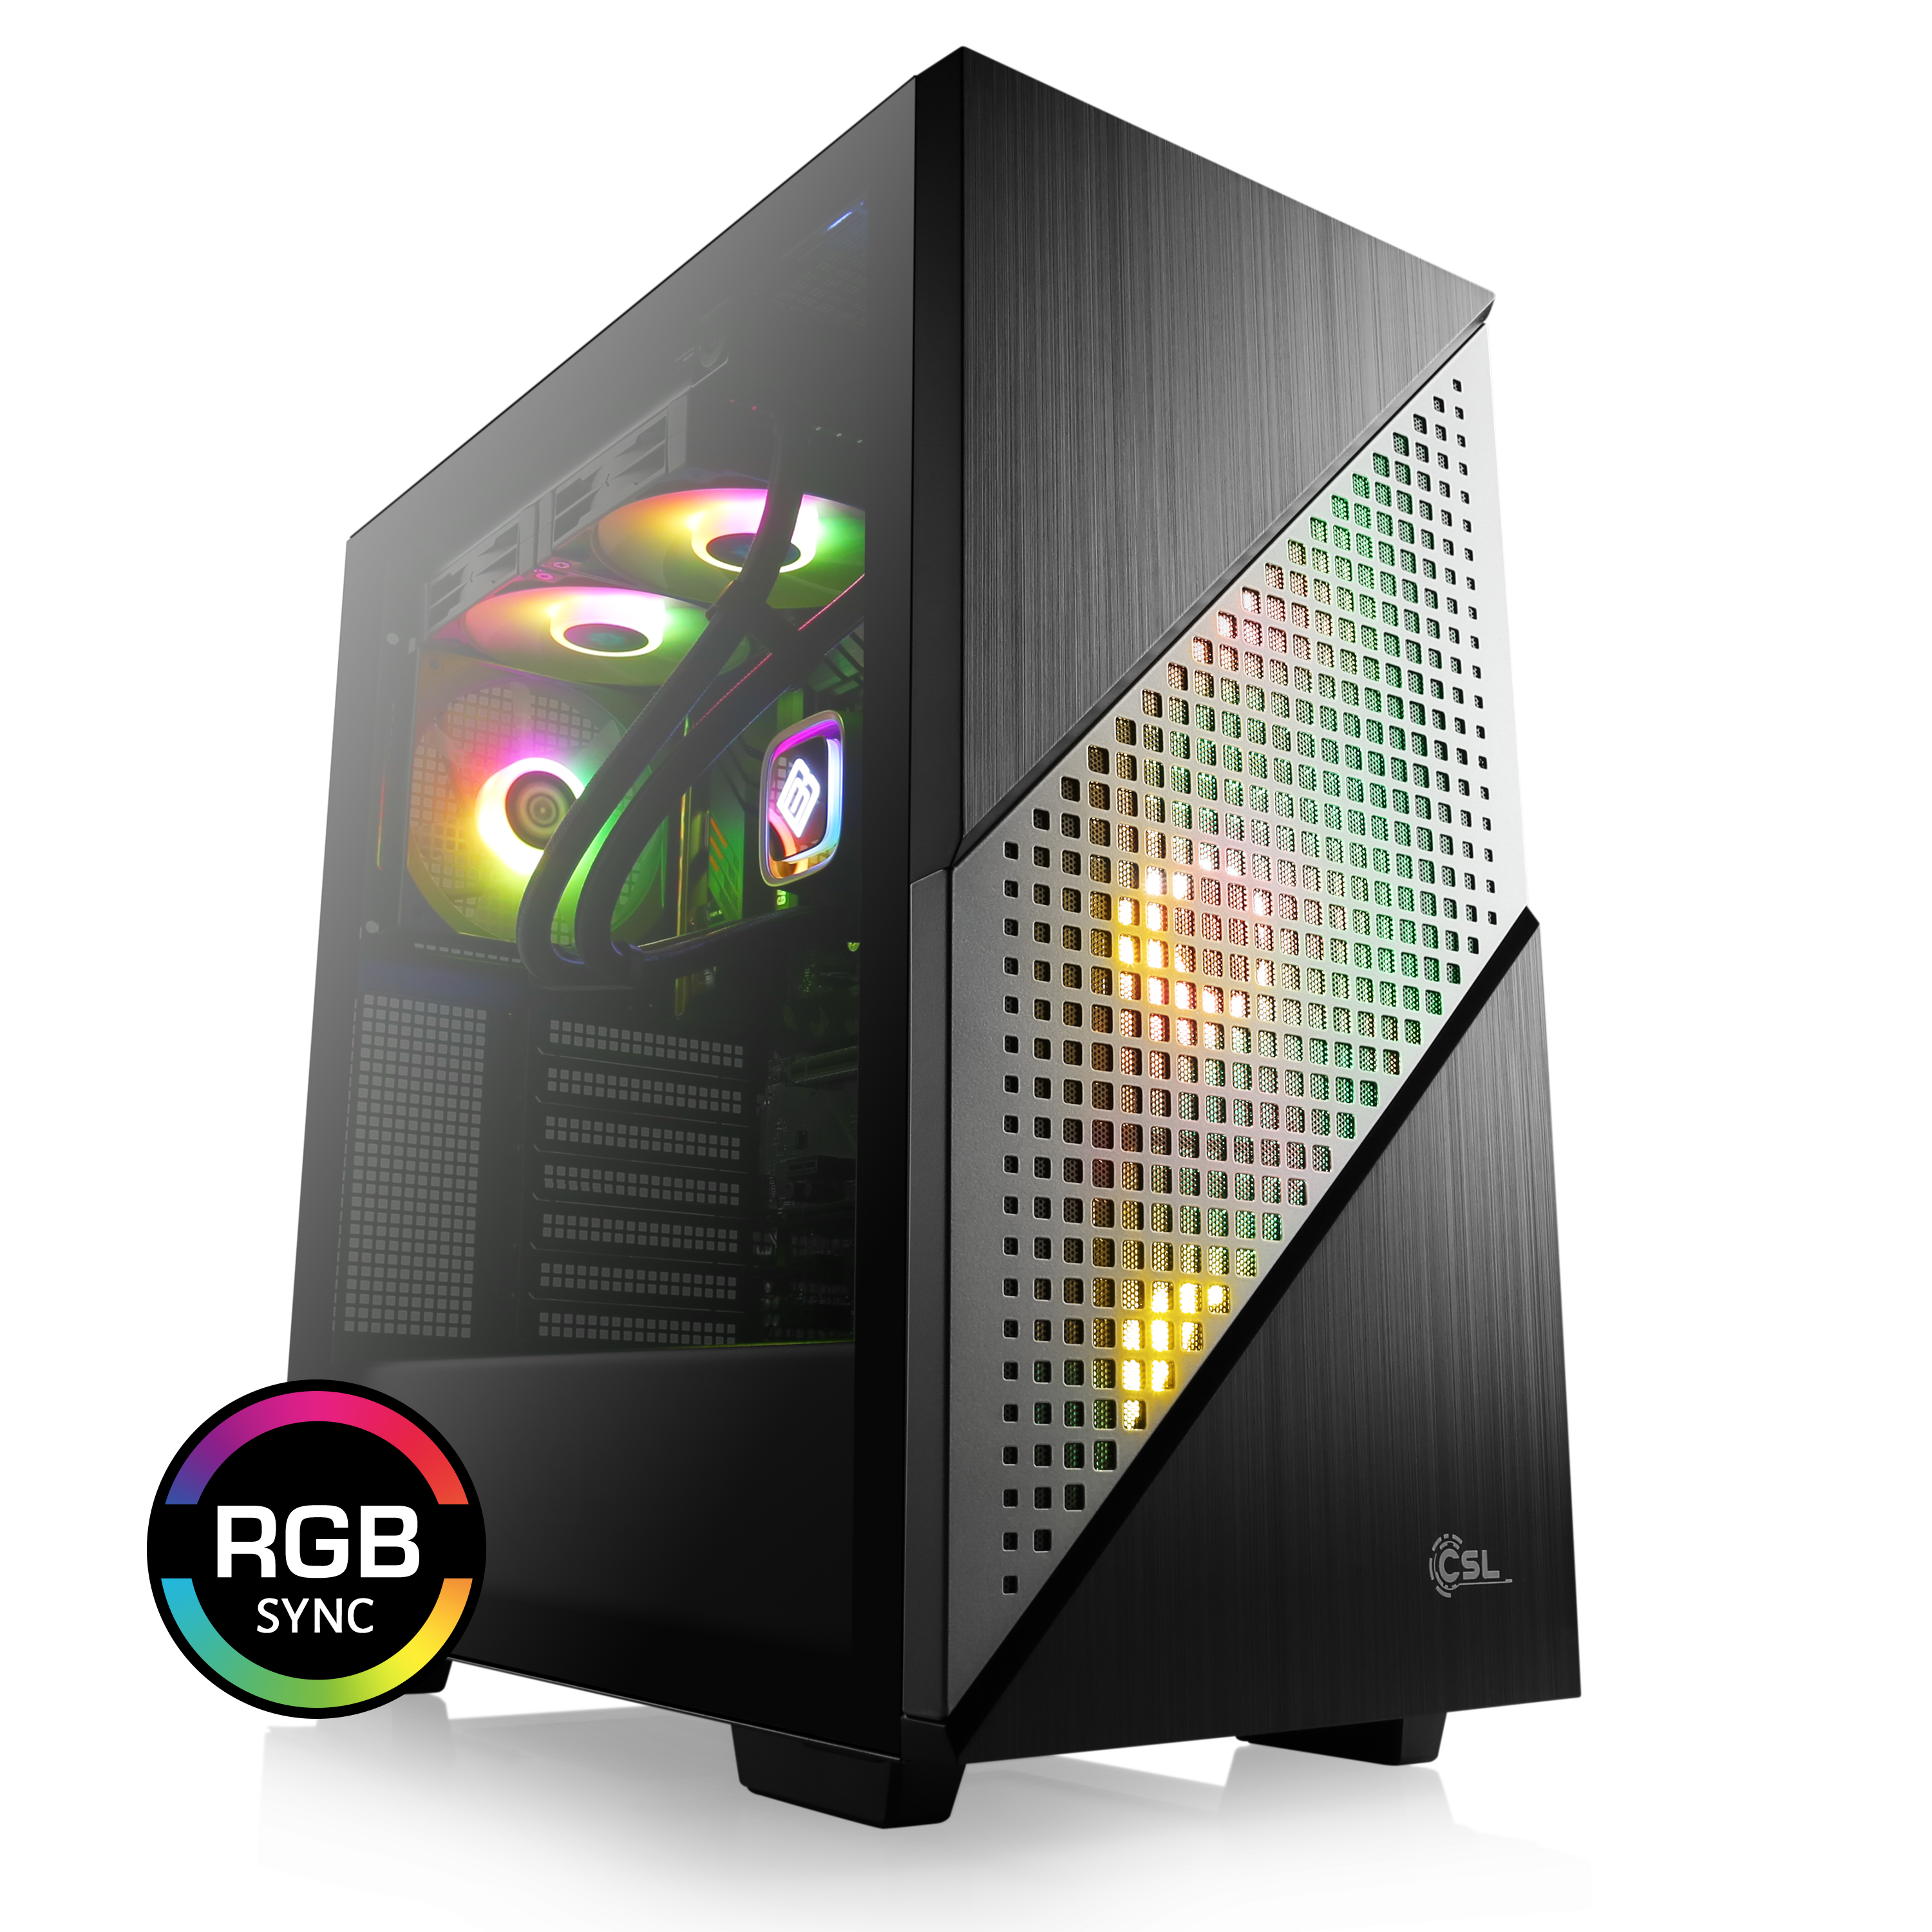 CORSAIR Boitier PC Spec Omega RGB - Moyen Tour - Noir - Fenetre en